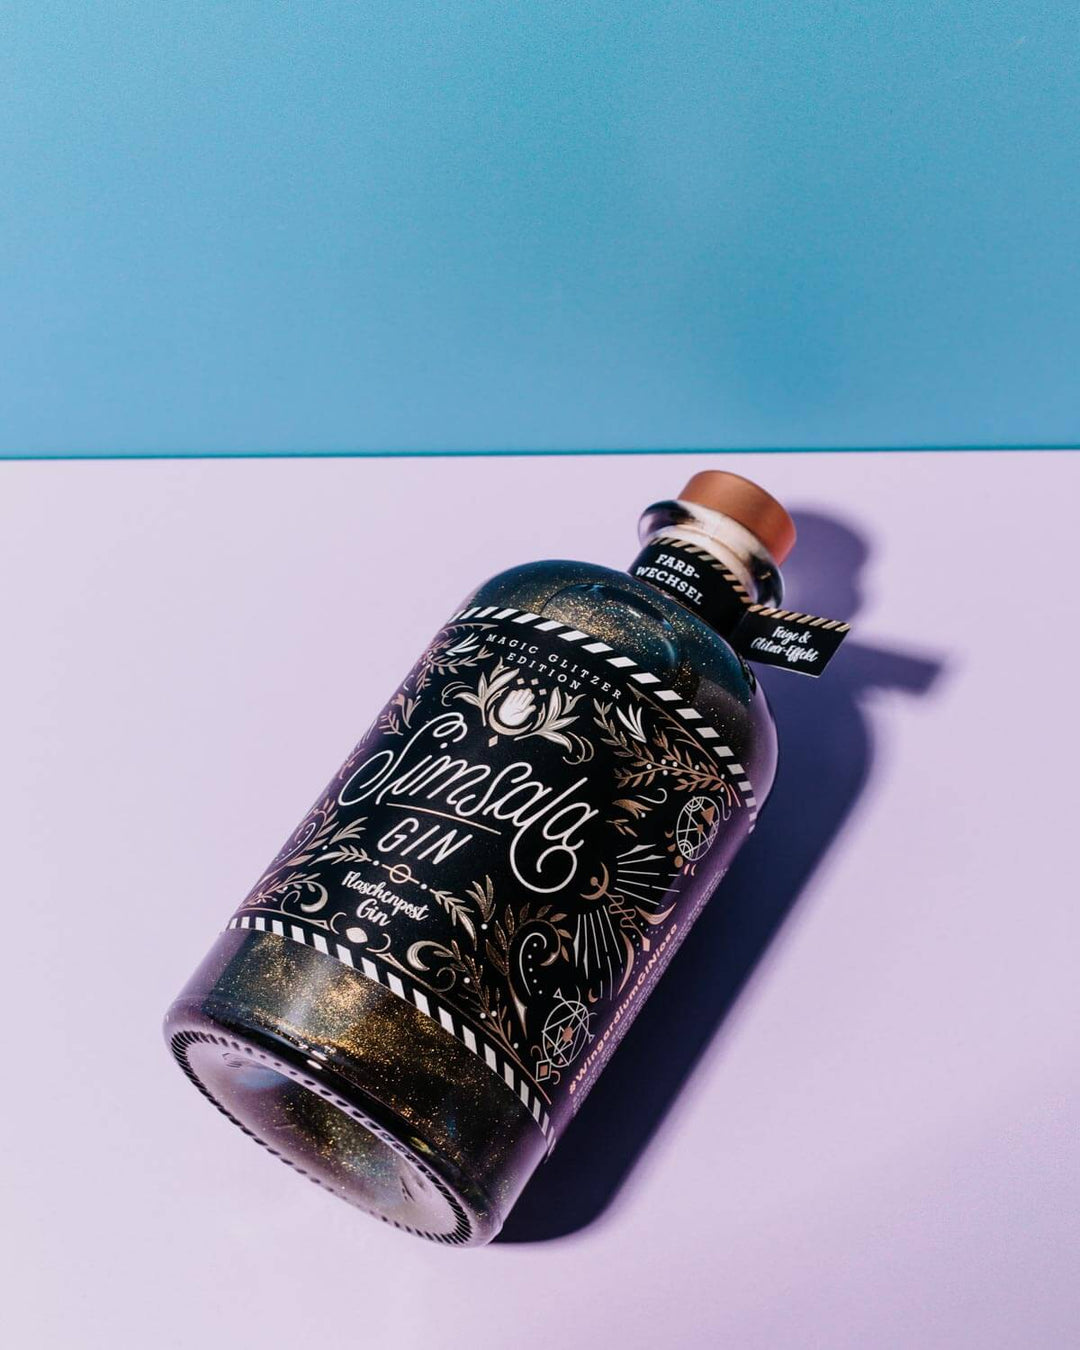 Das Etikett des Simsala Gins von Flaschenpost Gin ist ein wahrhaft magisches Kunstwerk mit goldenen Details auf schwarzem Hintergrund, das vom Special Artist Nim Ben-Reuven aus New York kreiert wurde.